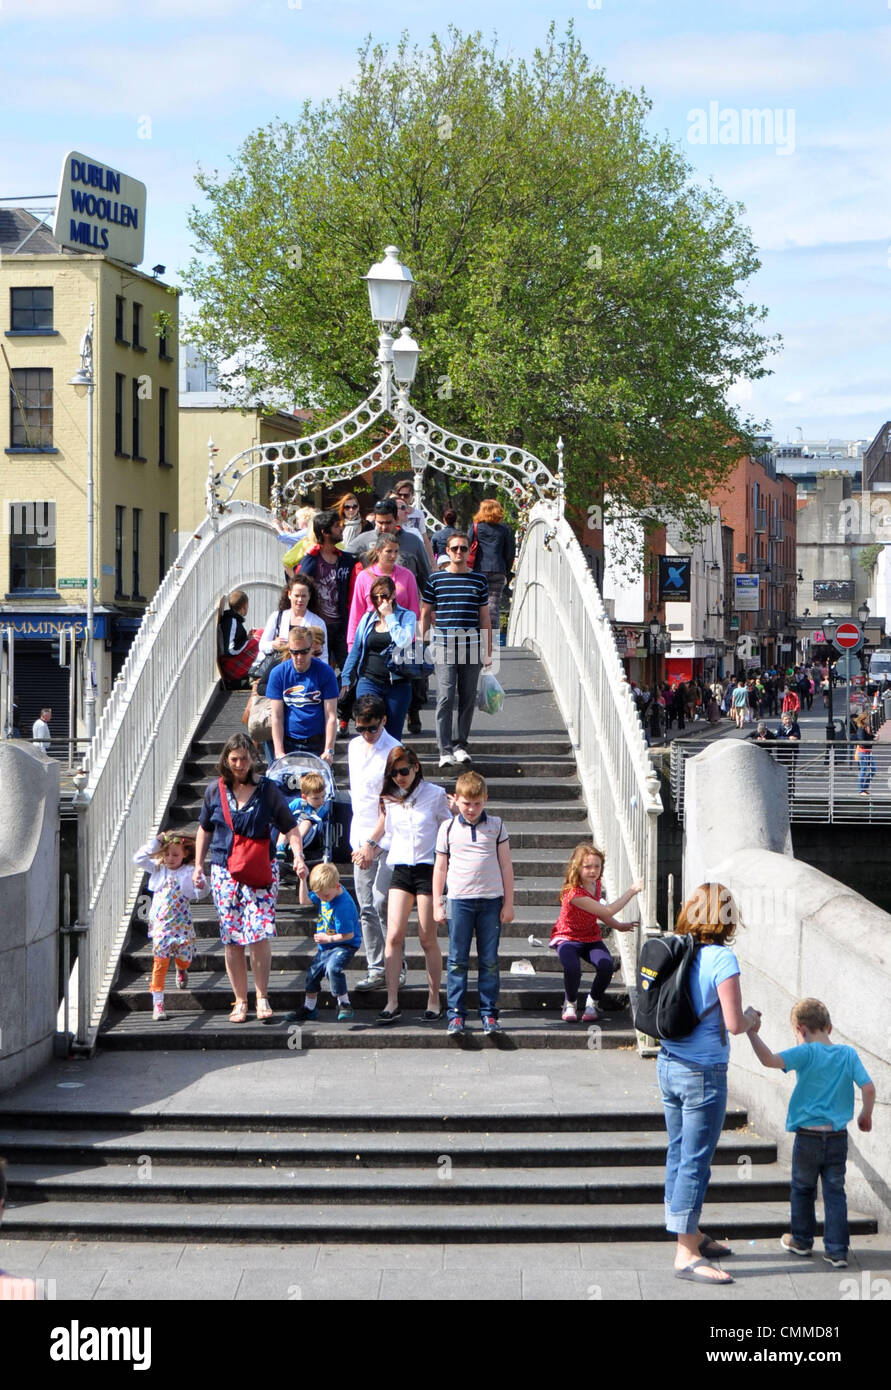 Die Ha'penny-Brücke über den Liffey im Zentrum von Dublin ist wahrscheinlich die bekannteste Brücke der irischen Hauptstadt, aufgenommen am 03. Junj 2013. Die aus Gusseisen gefertigte Fußgänger-Brücke wurde im Jahre 1816 gebaut. Ihr ursprünglicher Name war Wellington-Brücke. Die Dubliner nannten sie jedoch Ha'penny-Brücke, da sie beim Passieren einen halben Penny Maut bezahlen musste. Heute kostet die Brückennutzung nichts mehr. Foto: Frank Baumgart   The Half-Penny-Bridge crossing River Liffey in downtown Dublin is certainly the most famous bridge of the Irish capital, photo taken June 3, 201 Stock Photo